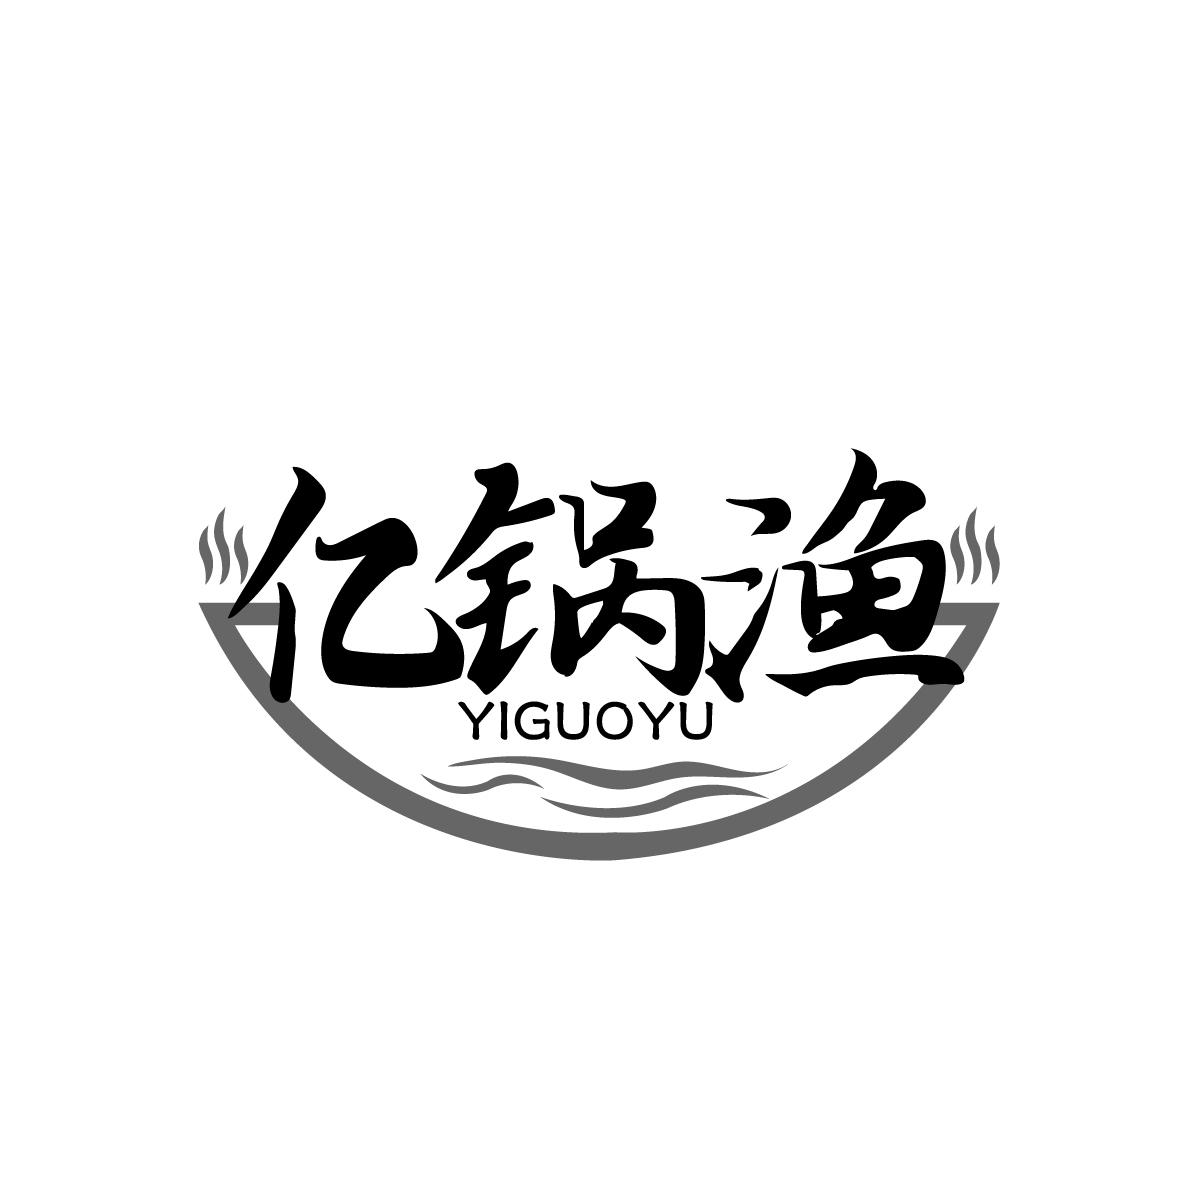 亿锅渔
YIGUOYU